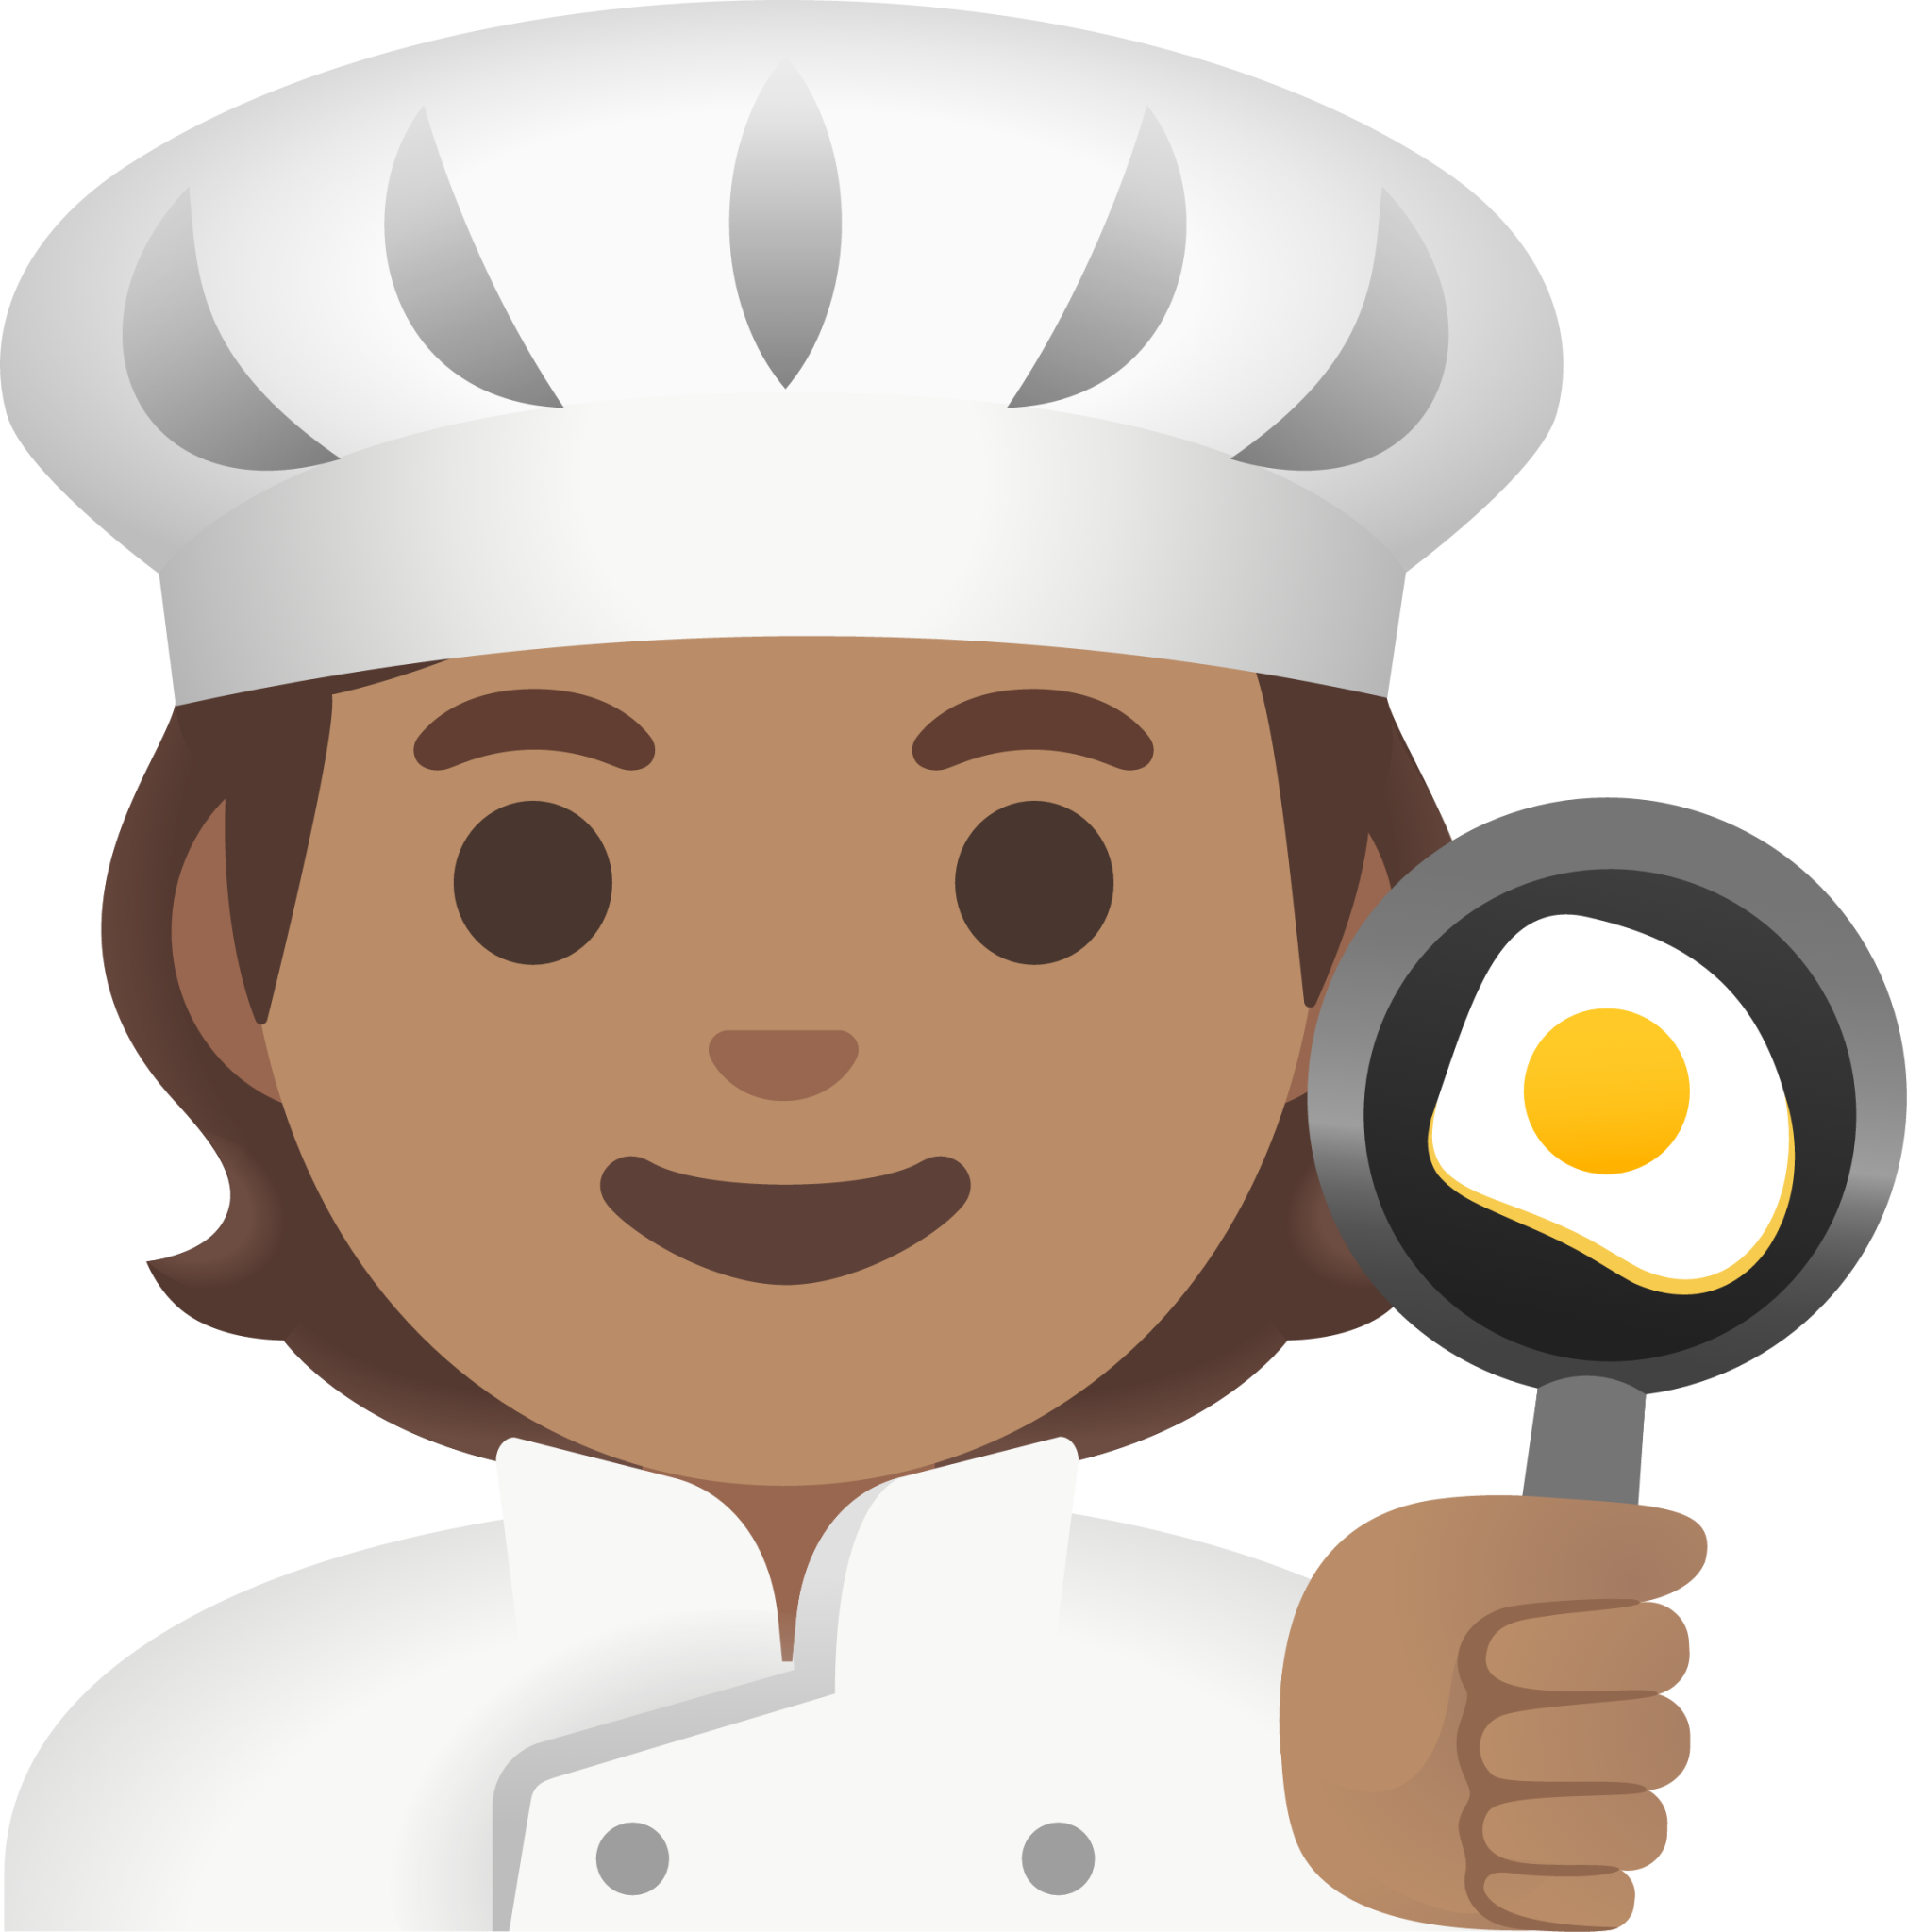 cook: medium skin tone emoji